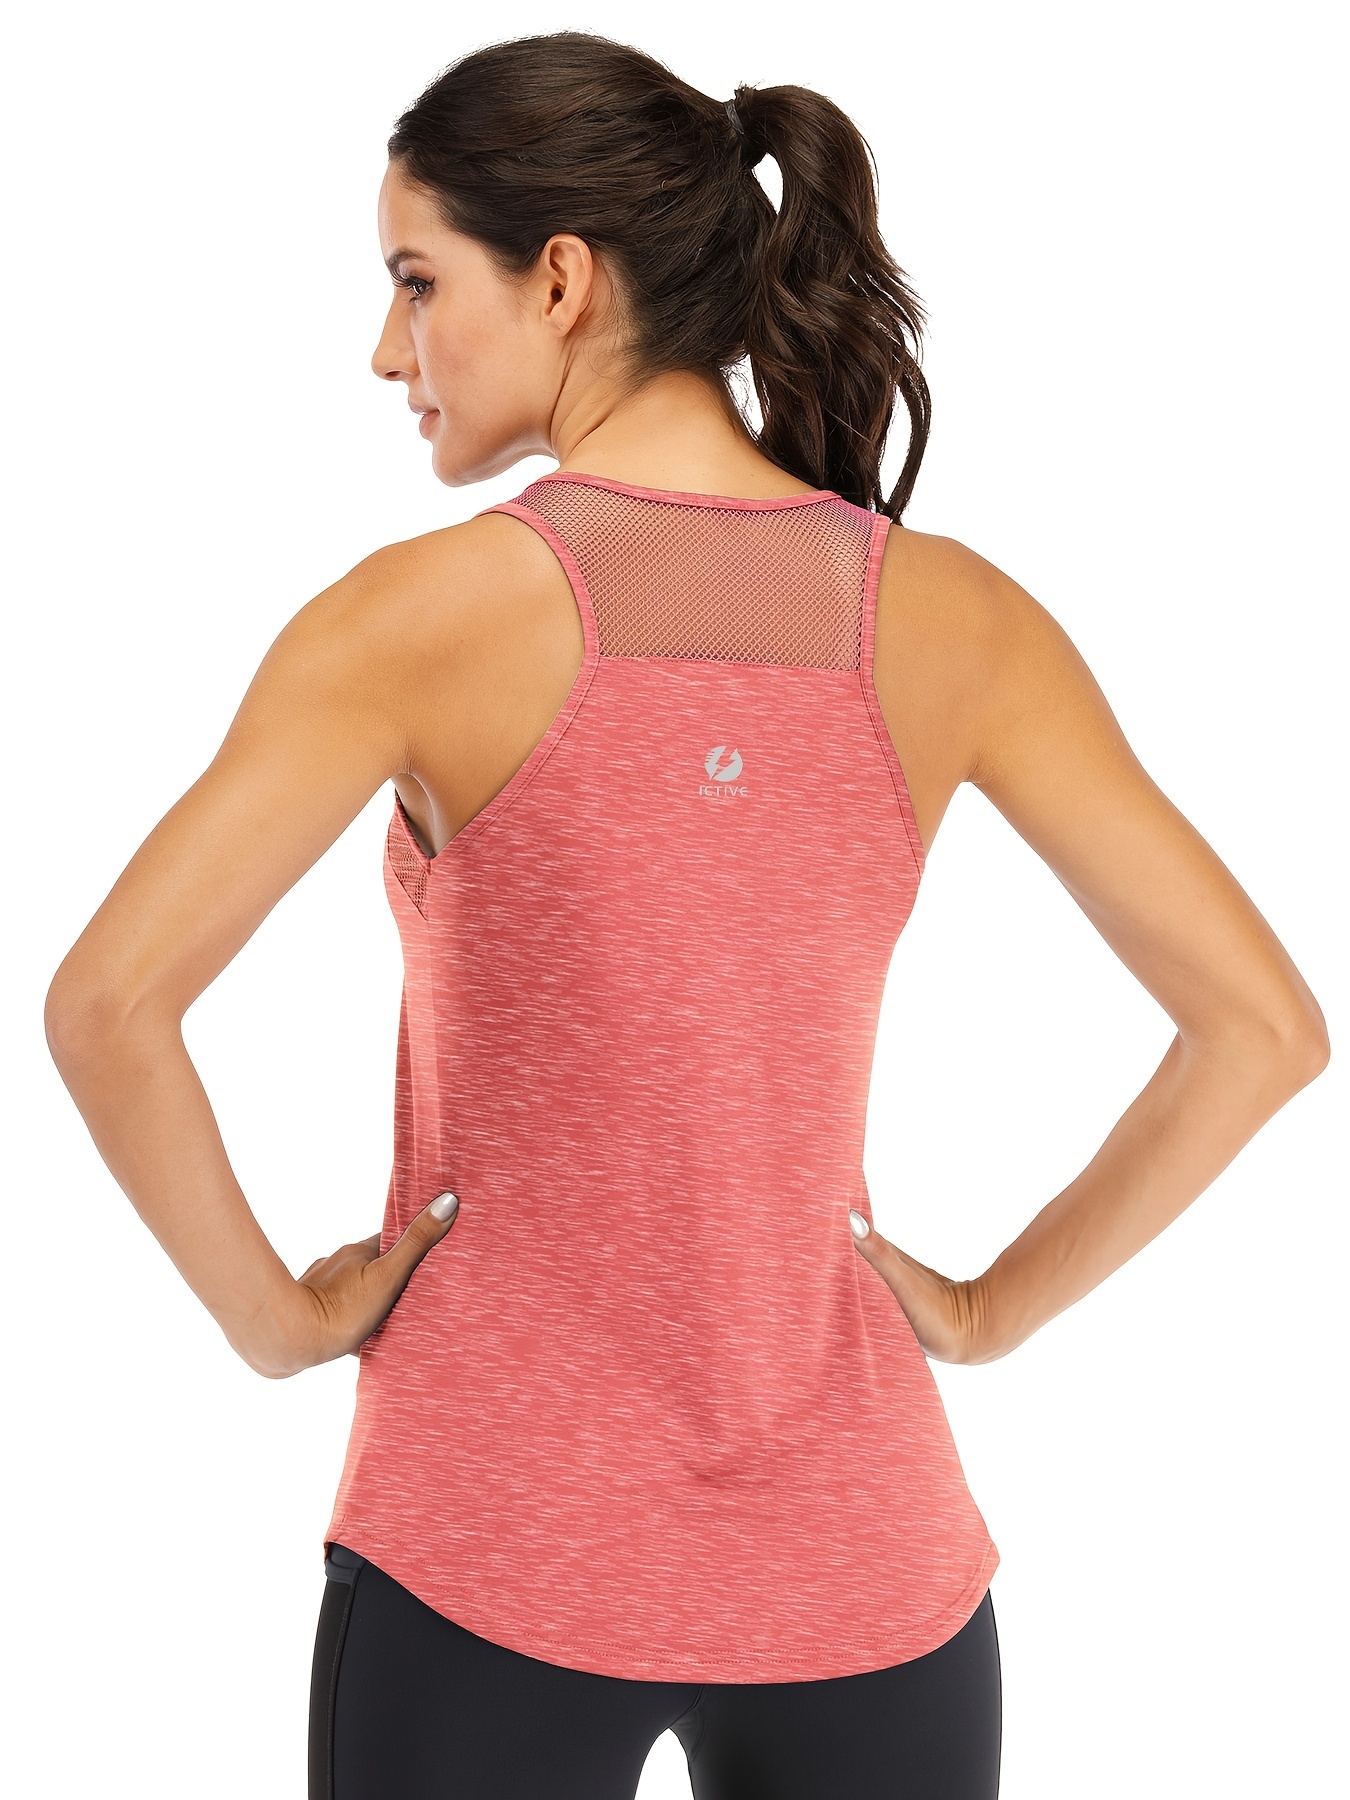 Camiseta yoga para mujer Camiseta Ropa de entrenamiento Rojo S Colco mujeres  de yoga sin mangas